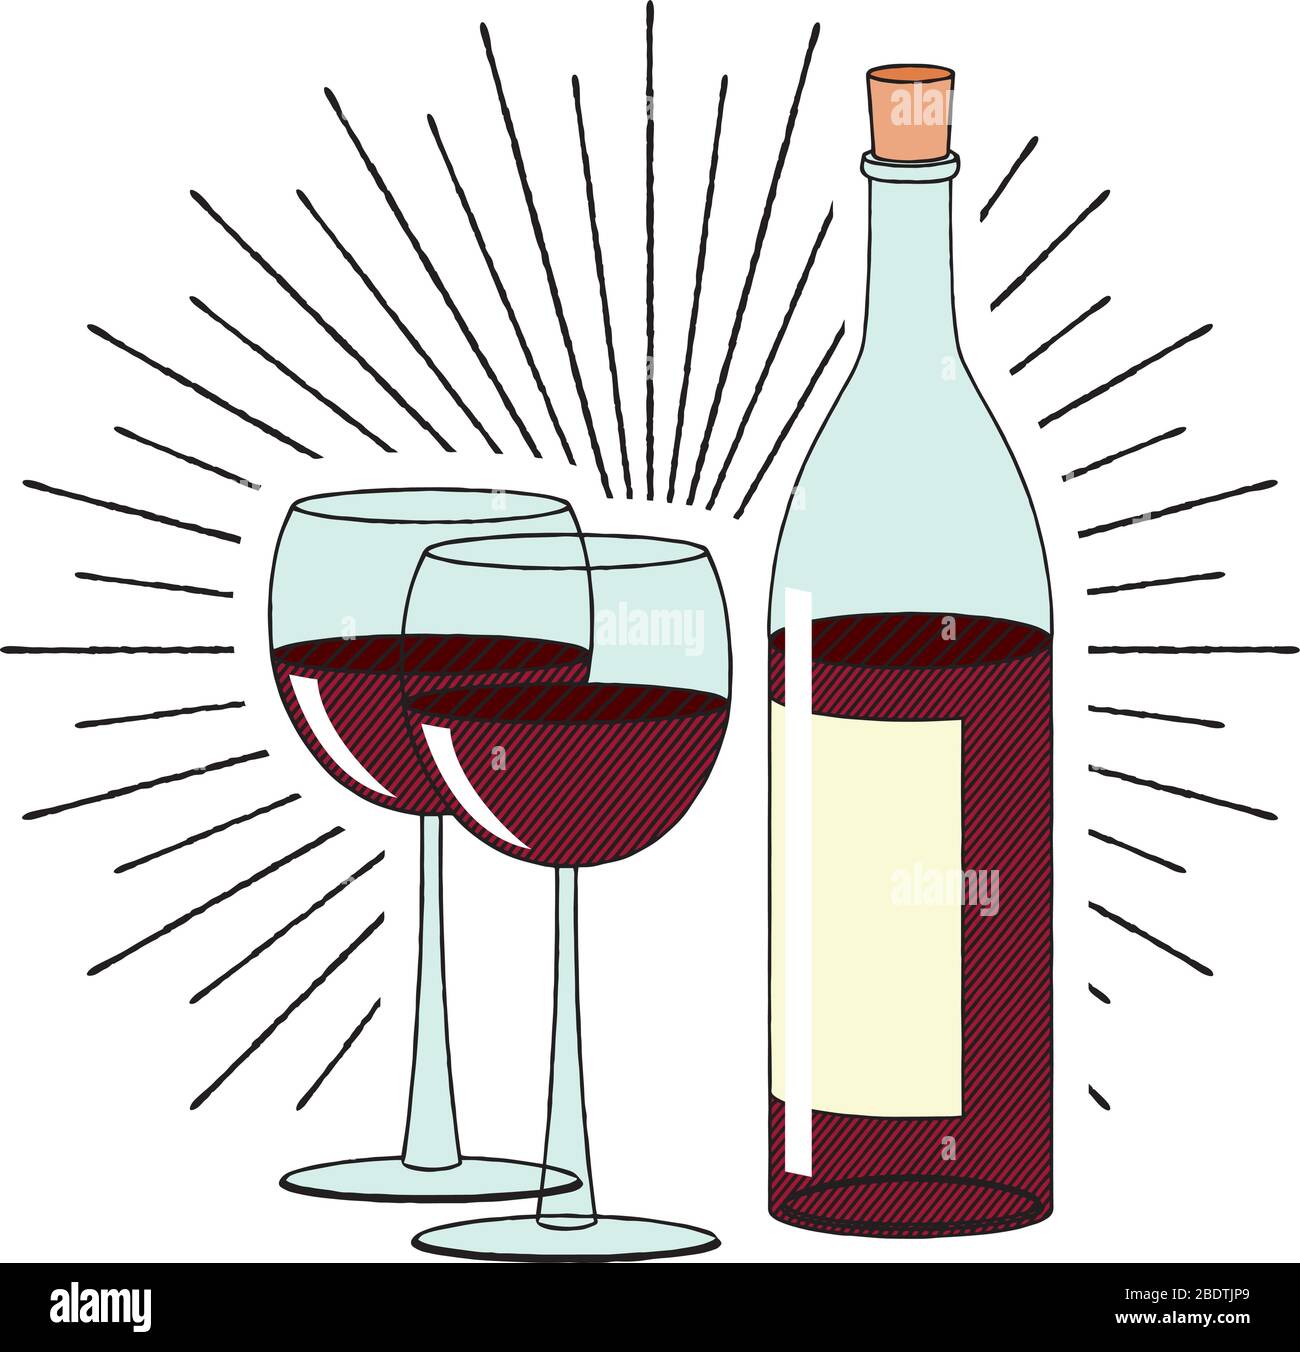 Flasche Wein und zwei Gläser - Illustration/Clipart Stock-Vektorgrafik -  Alamy